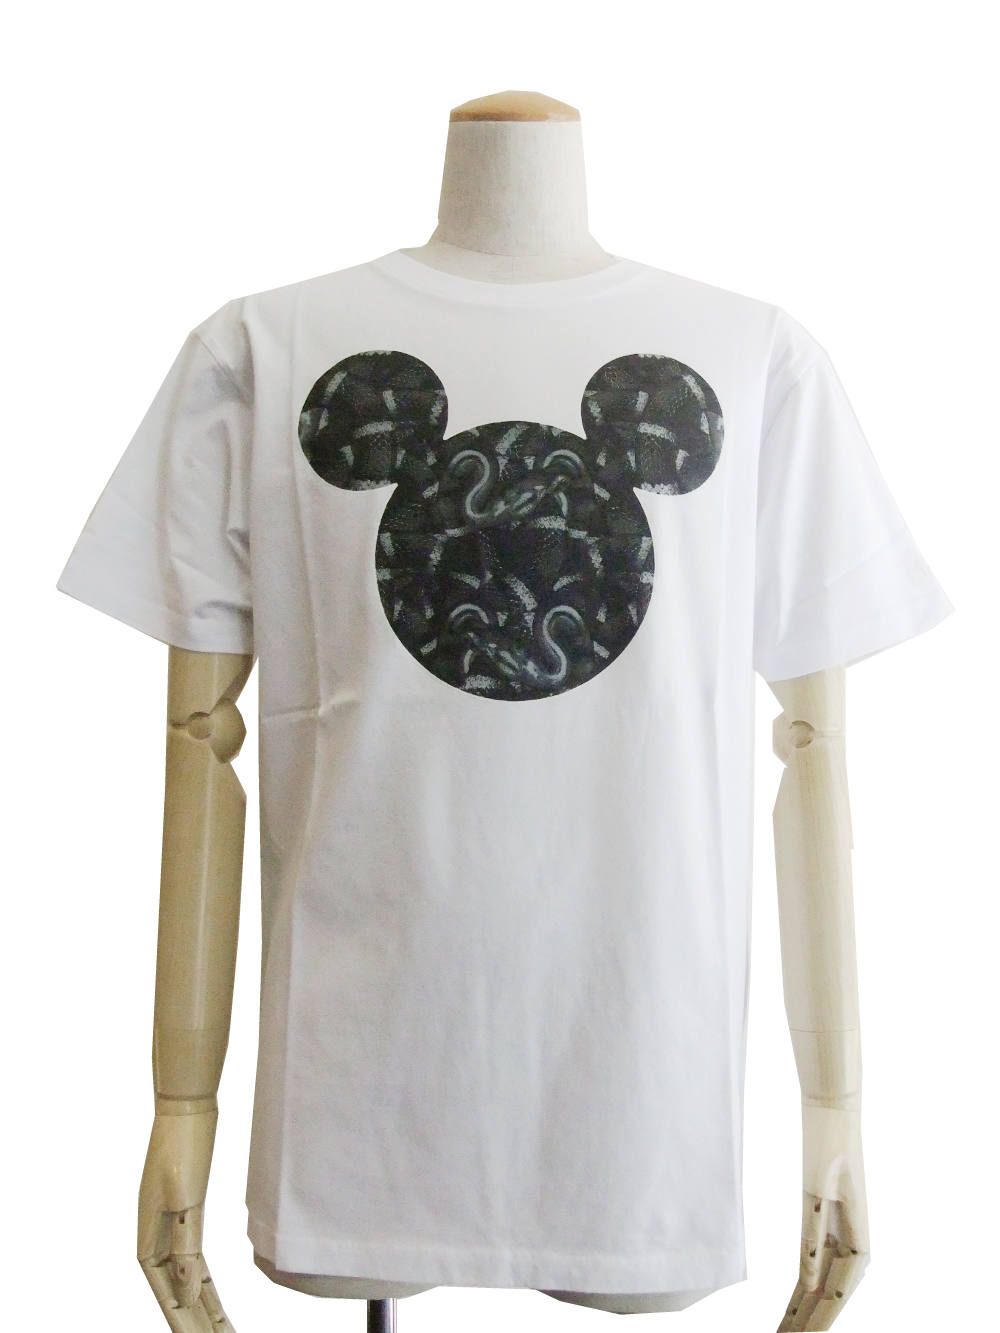 MARCELO BURLON × Disney  Tシャツ